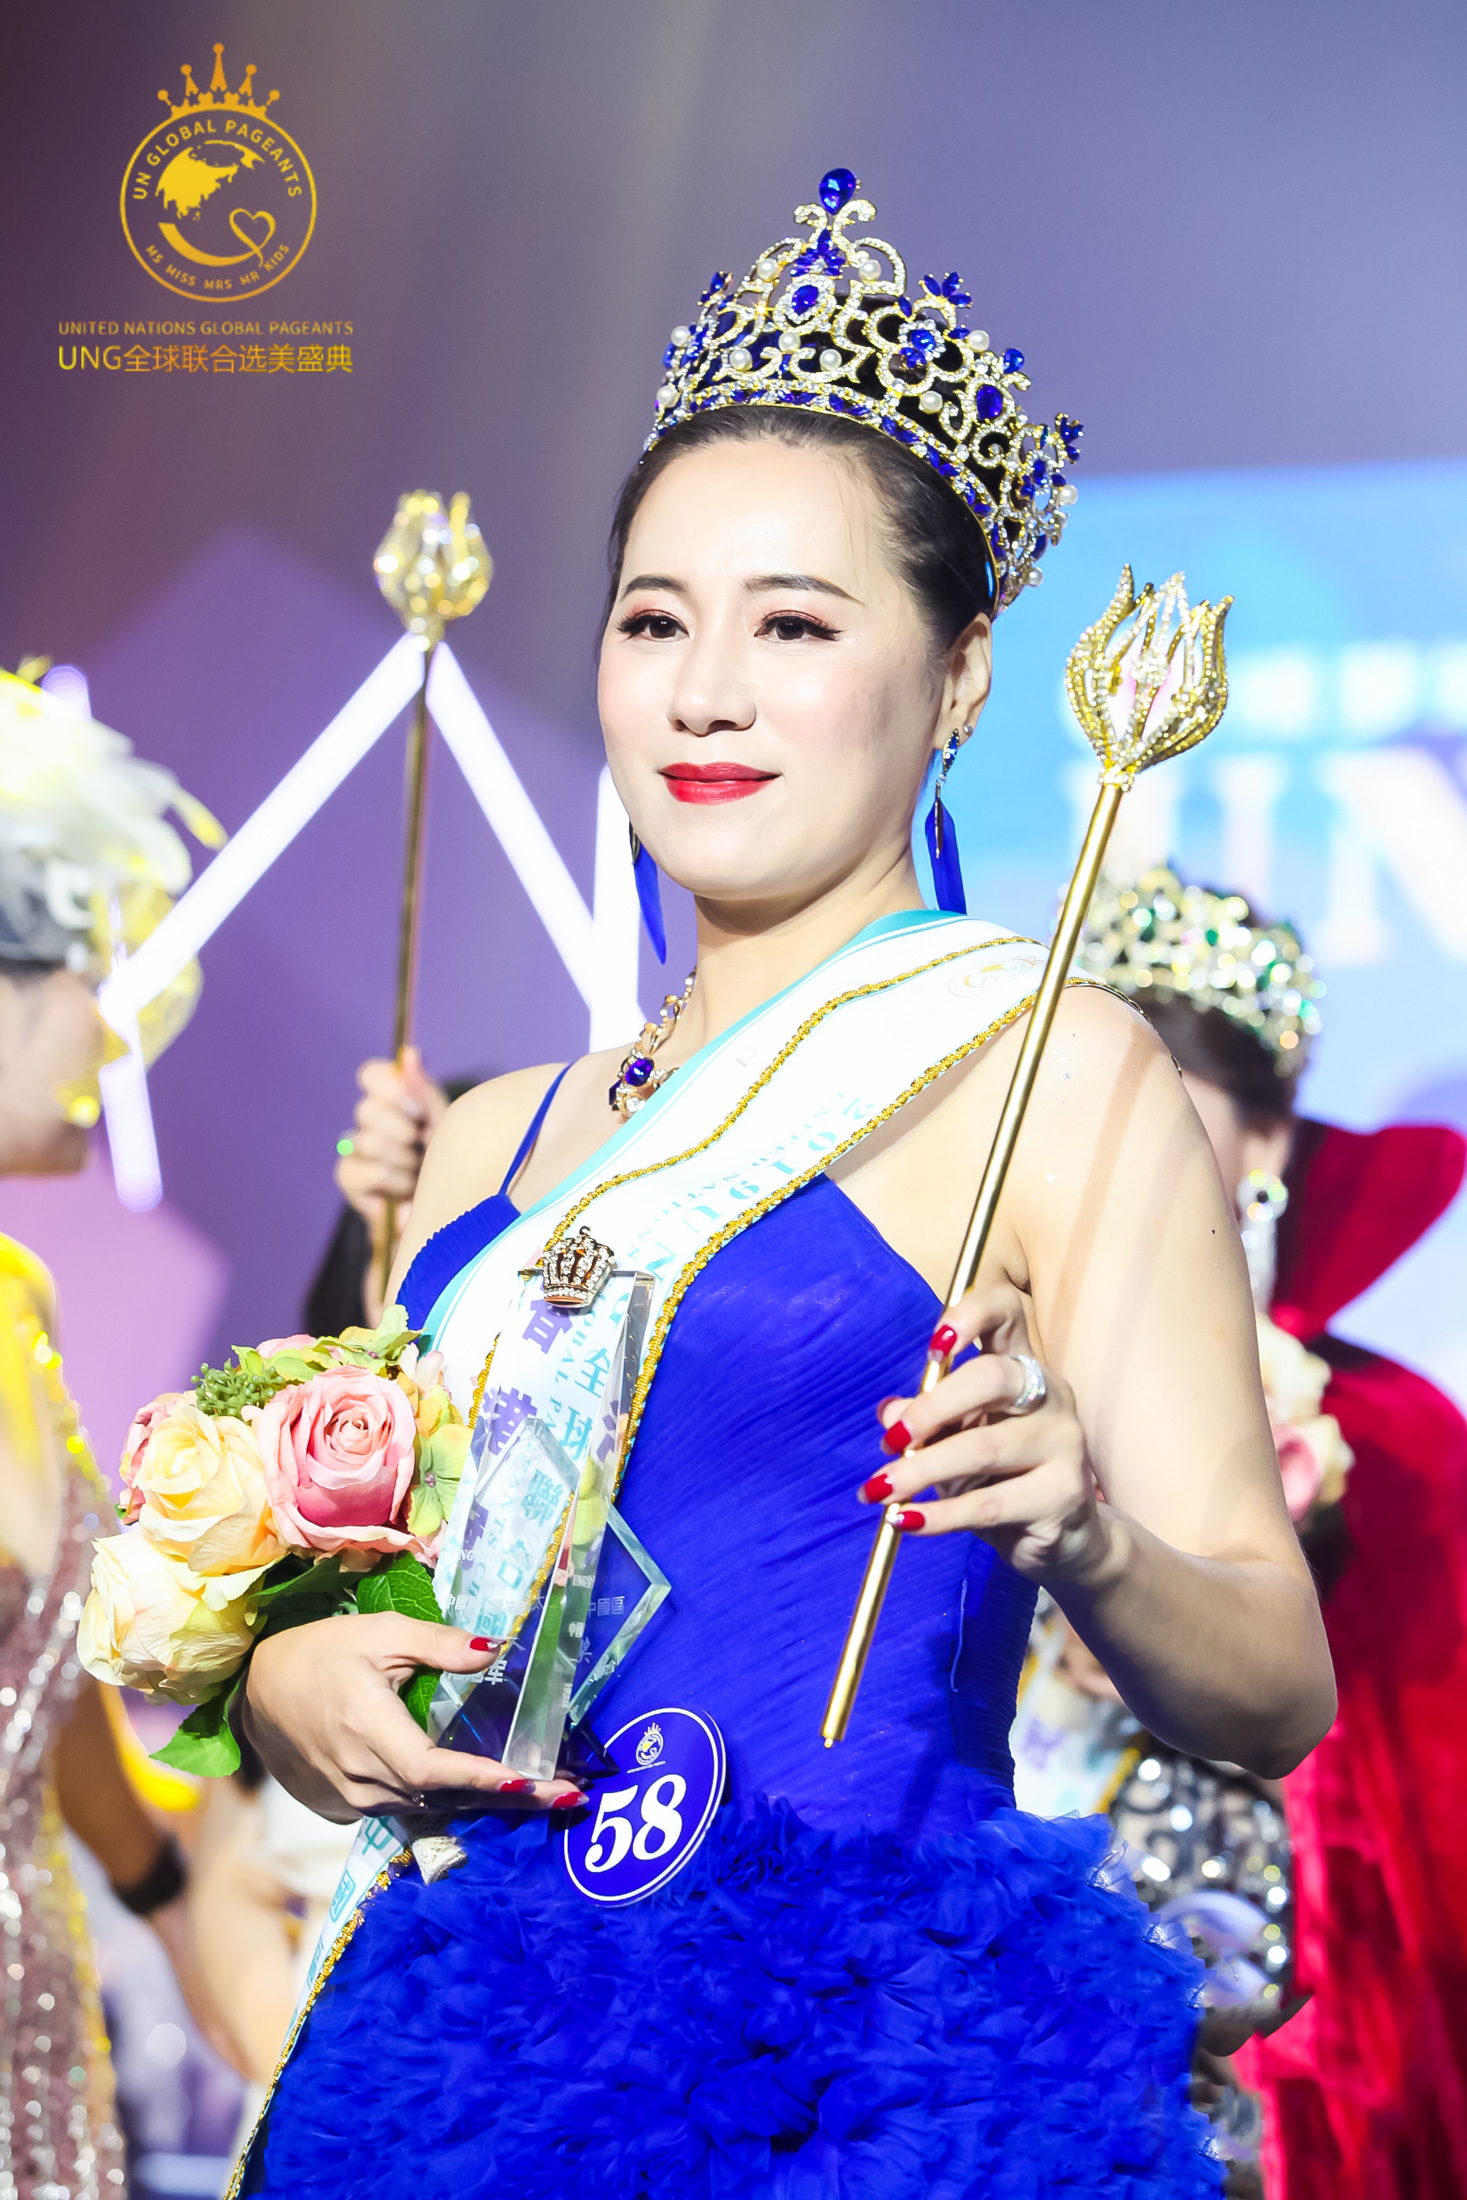 小姐,女士,太太各赛事系列的中国冠军,香港冠军,澳门冠军均已诞生